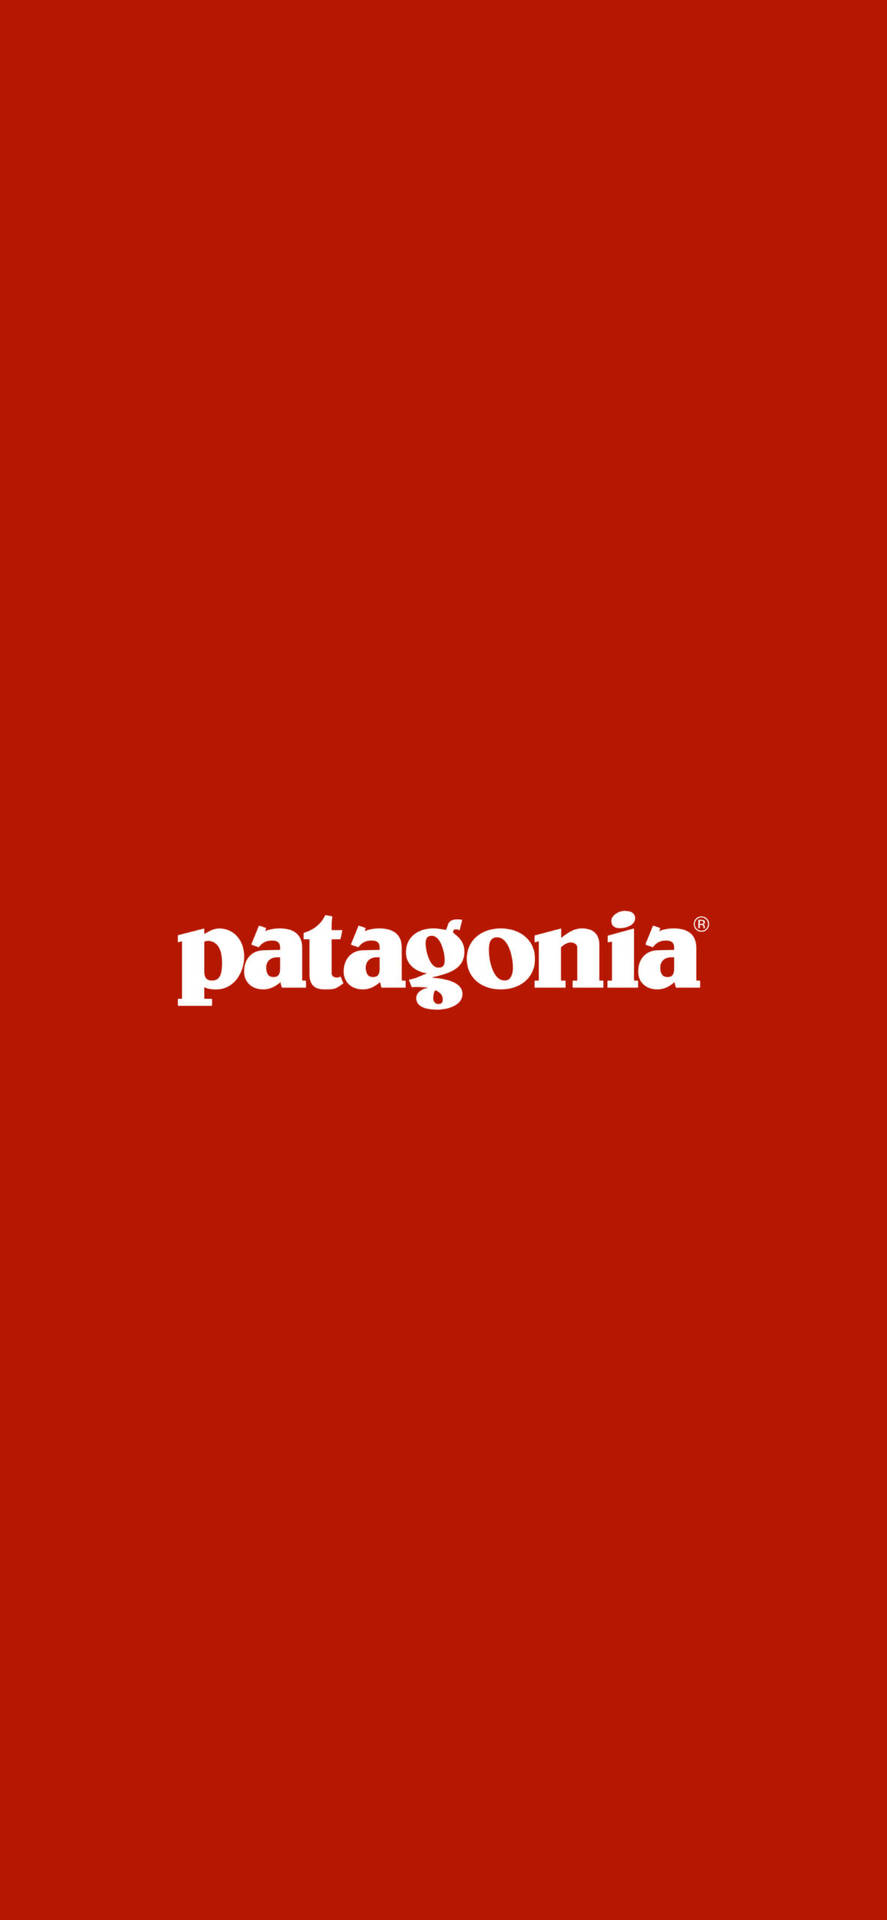 Red Patagonia Logo